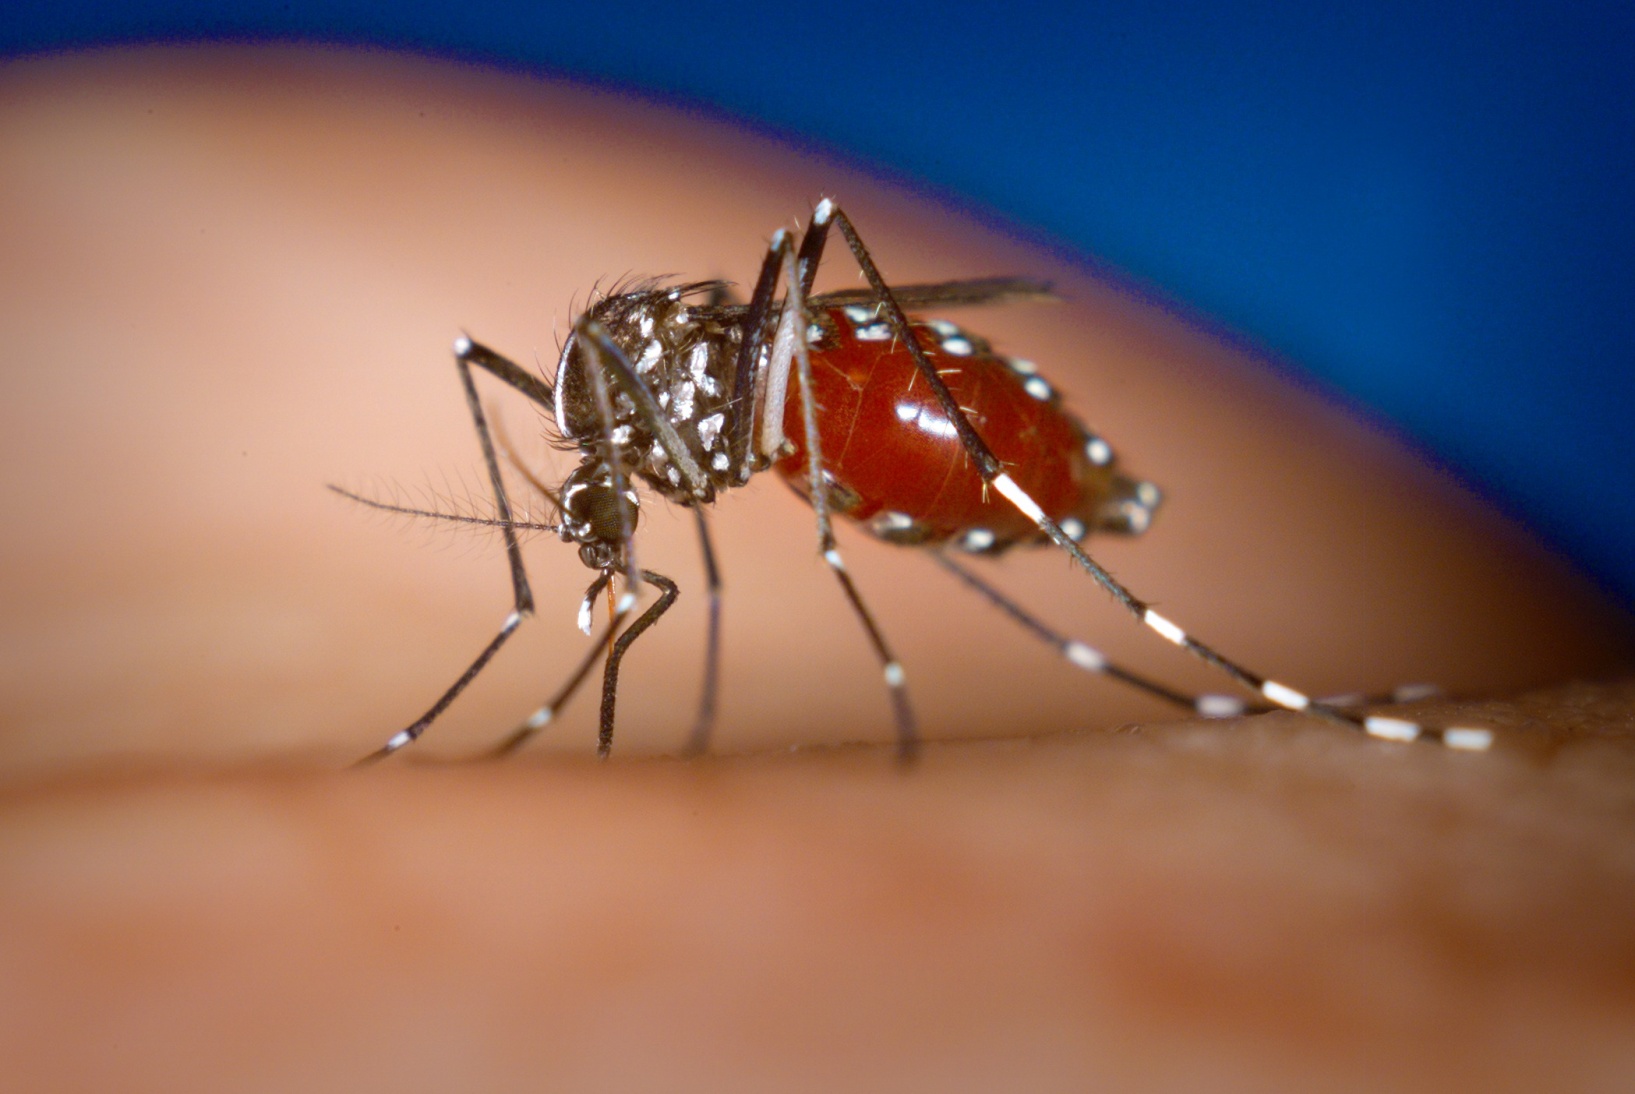 一只白纹伊蚊正欢快地在人的皮肤上饱餐。这红润饱满的躯体就像范仲淹在《咏蚊》中形容的一般——“饱似樱颗重，饥如柳絮轻”。图片：James Gathany/wiki